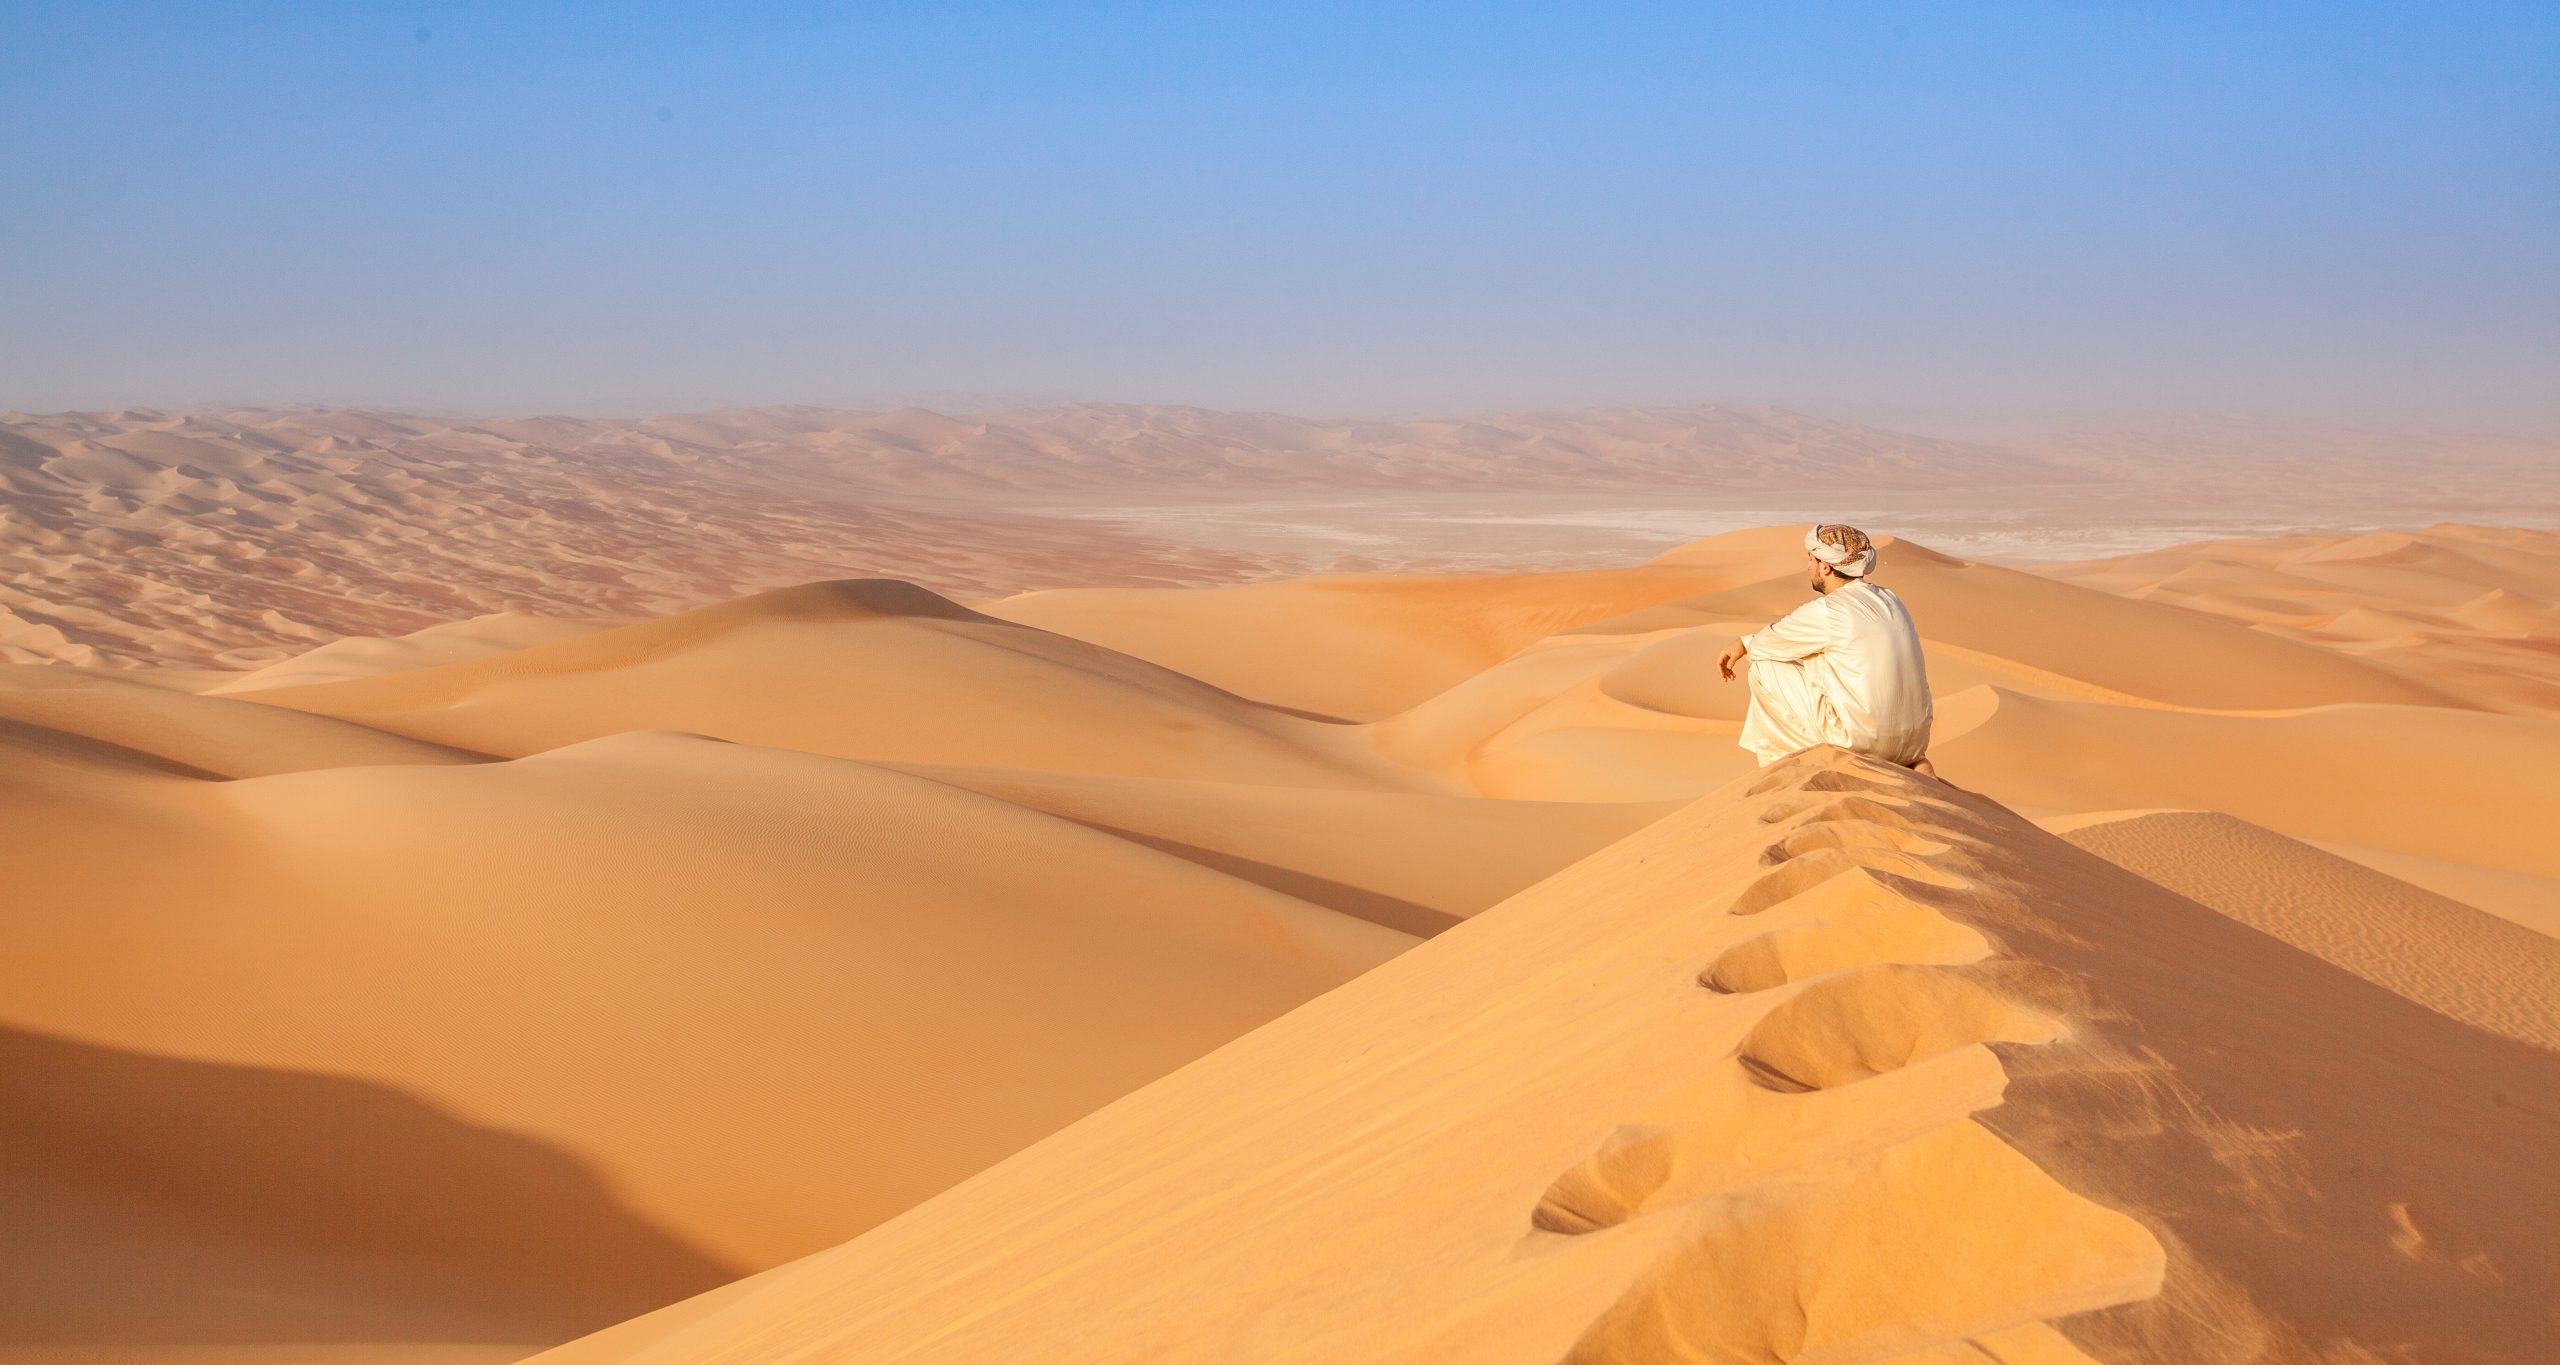 Desert agriculture: What is Oman’s ‘unfair advantage’?